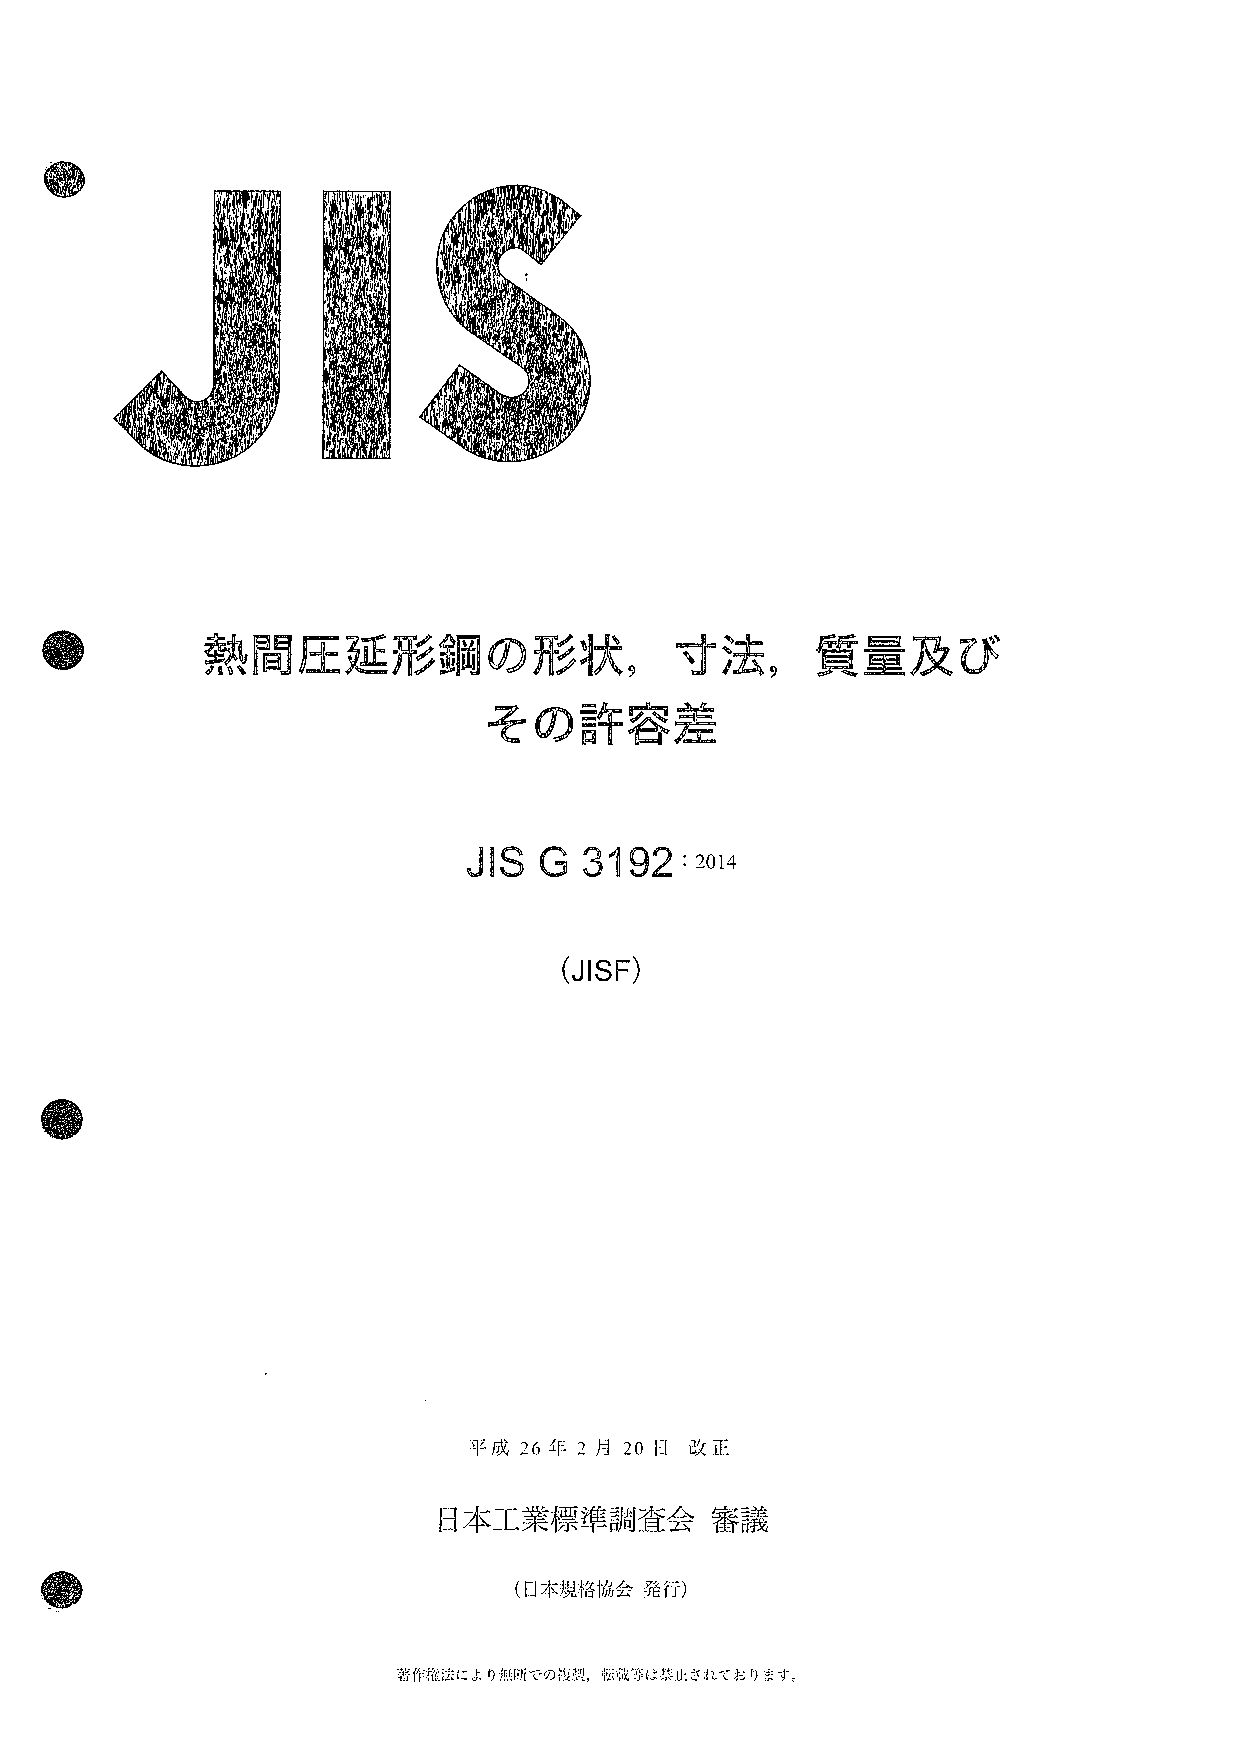 JIS G 3192:2014封面图